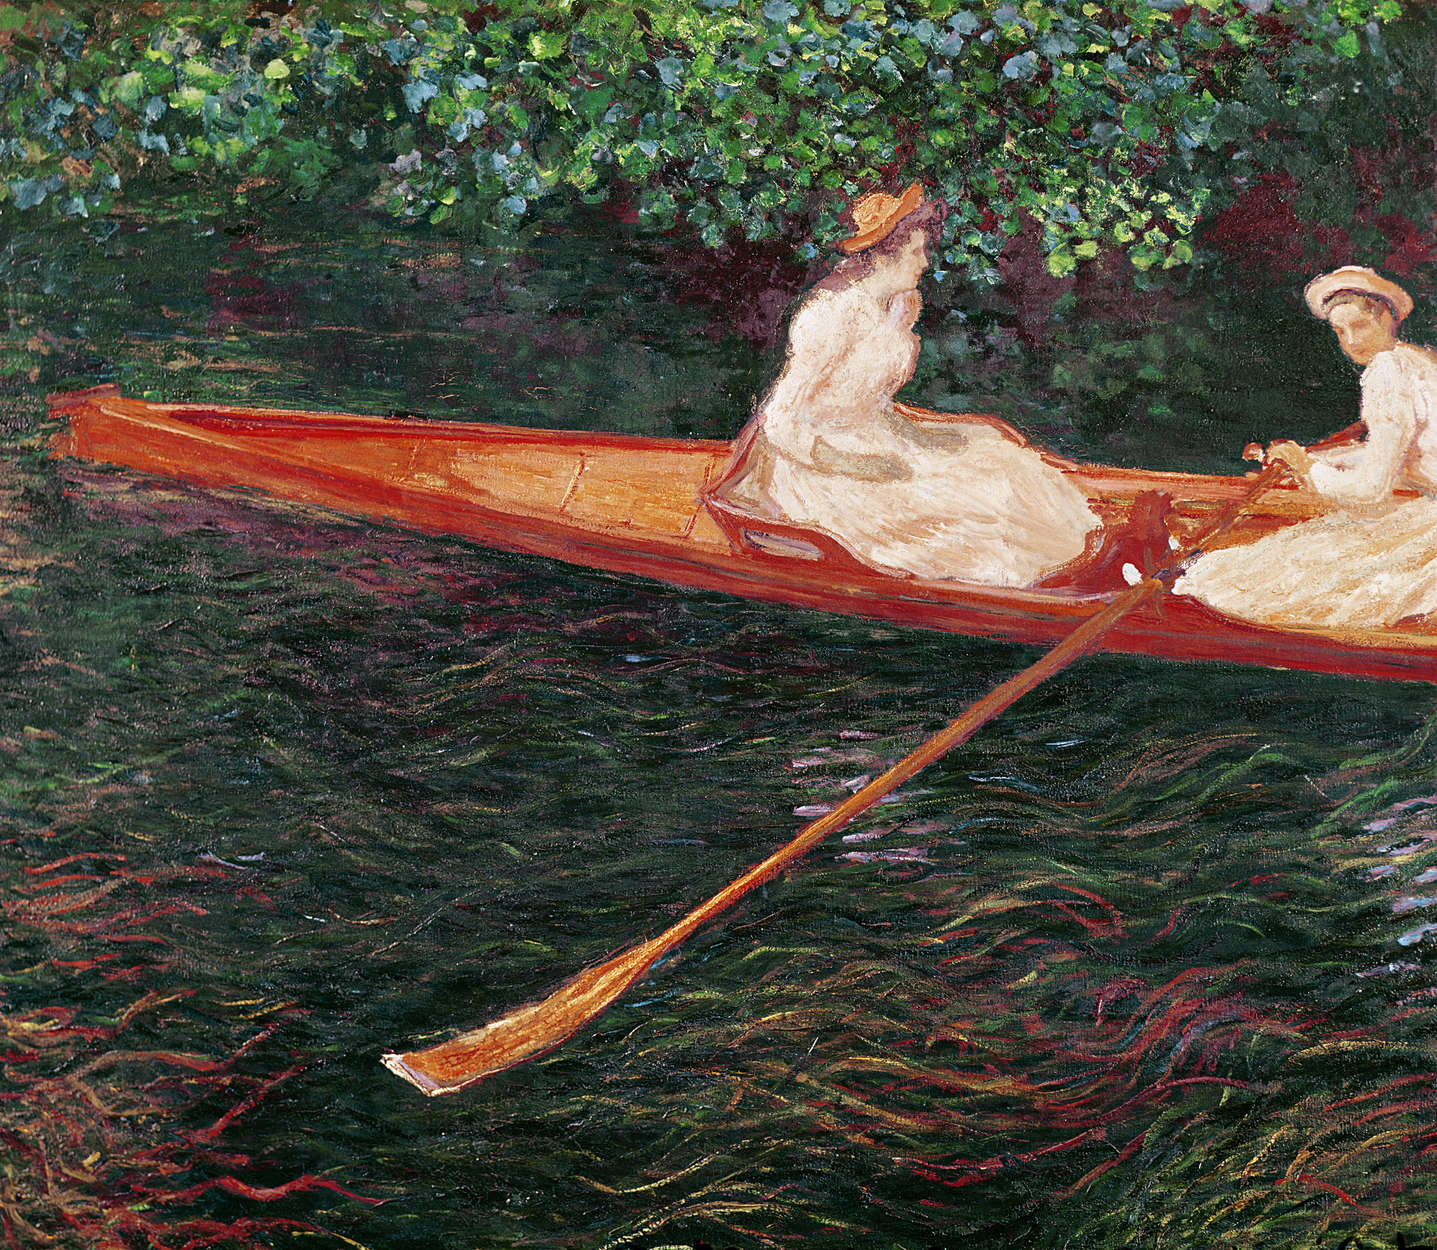             Papier peint panoramique "Bateau sur la rivière Epte" de Claude Monet
        